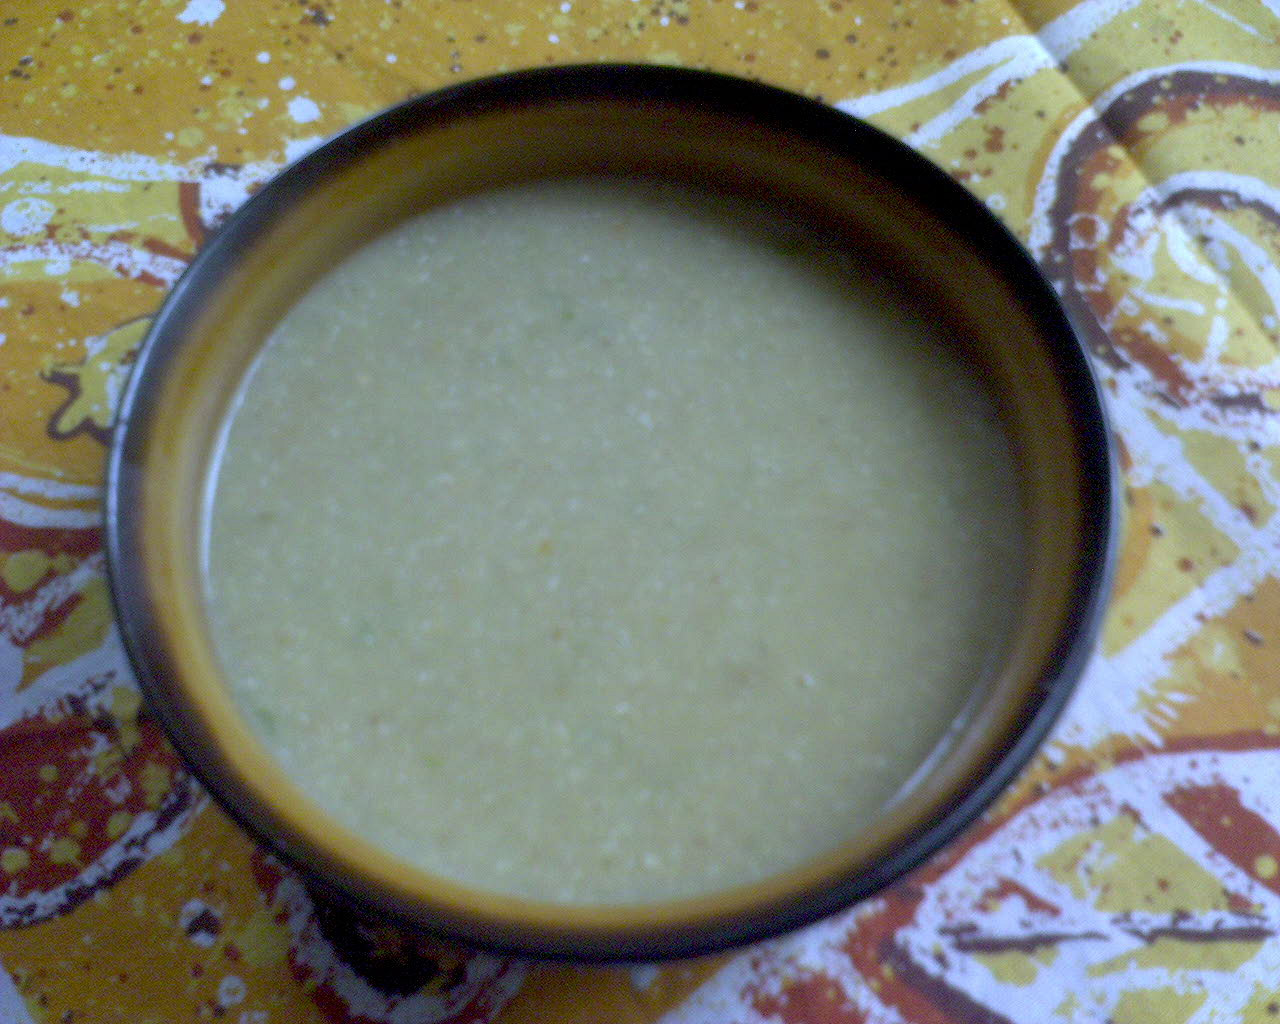 Cizrnová polévka s pohankou